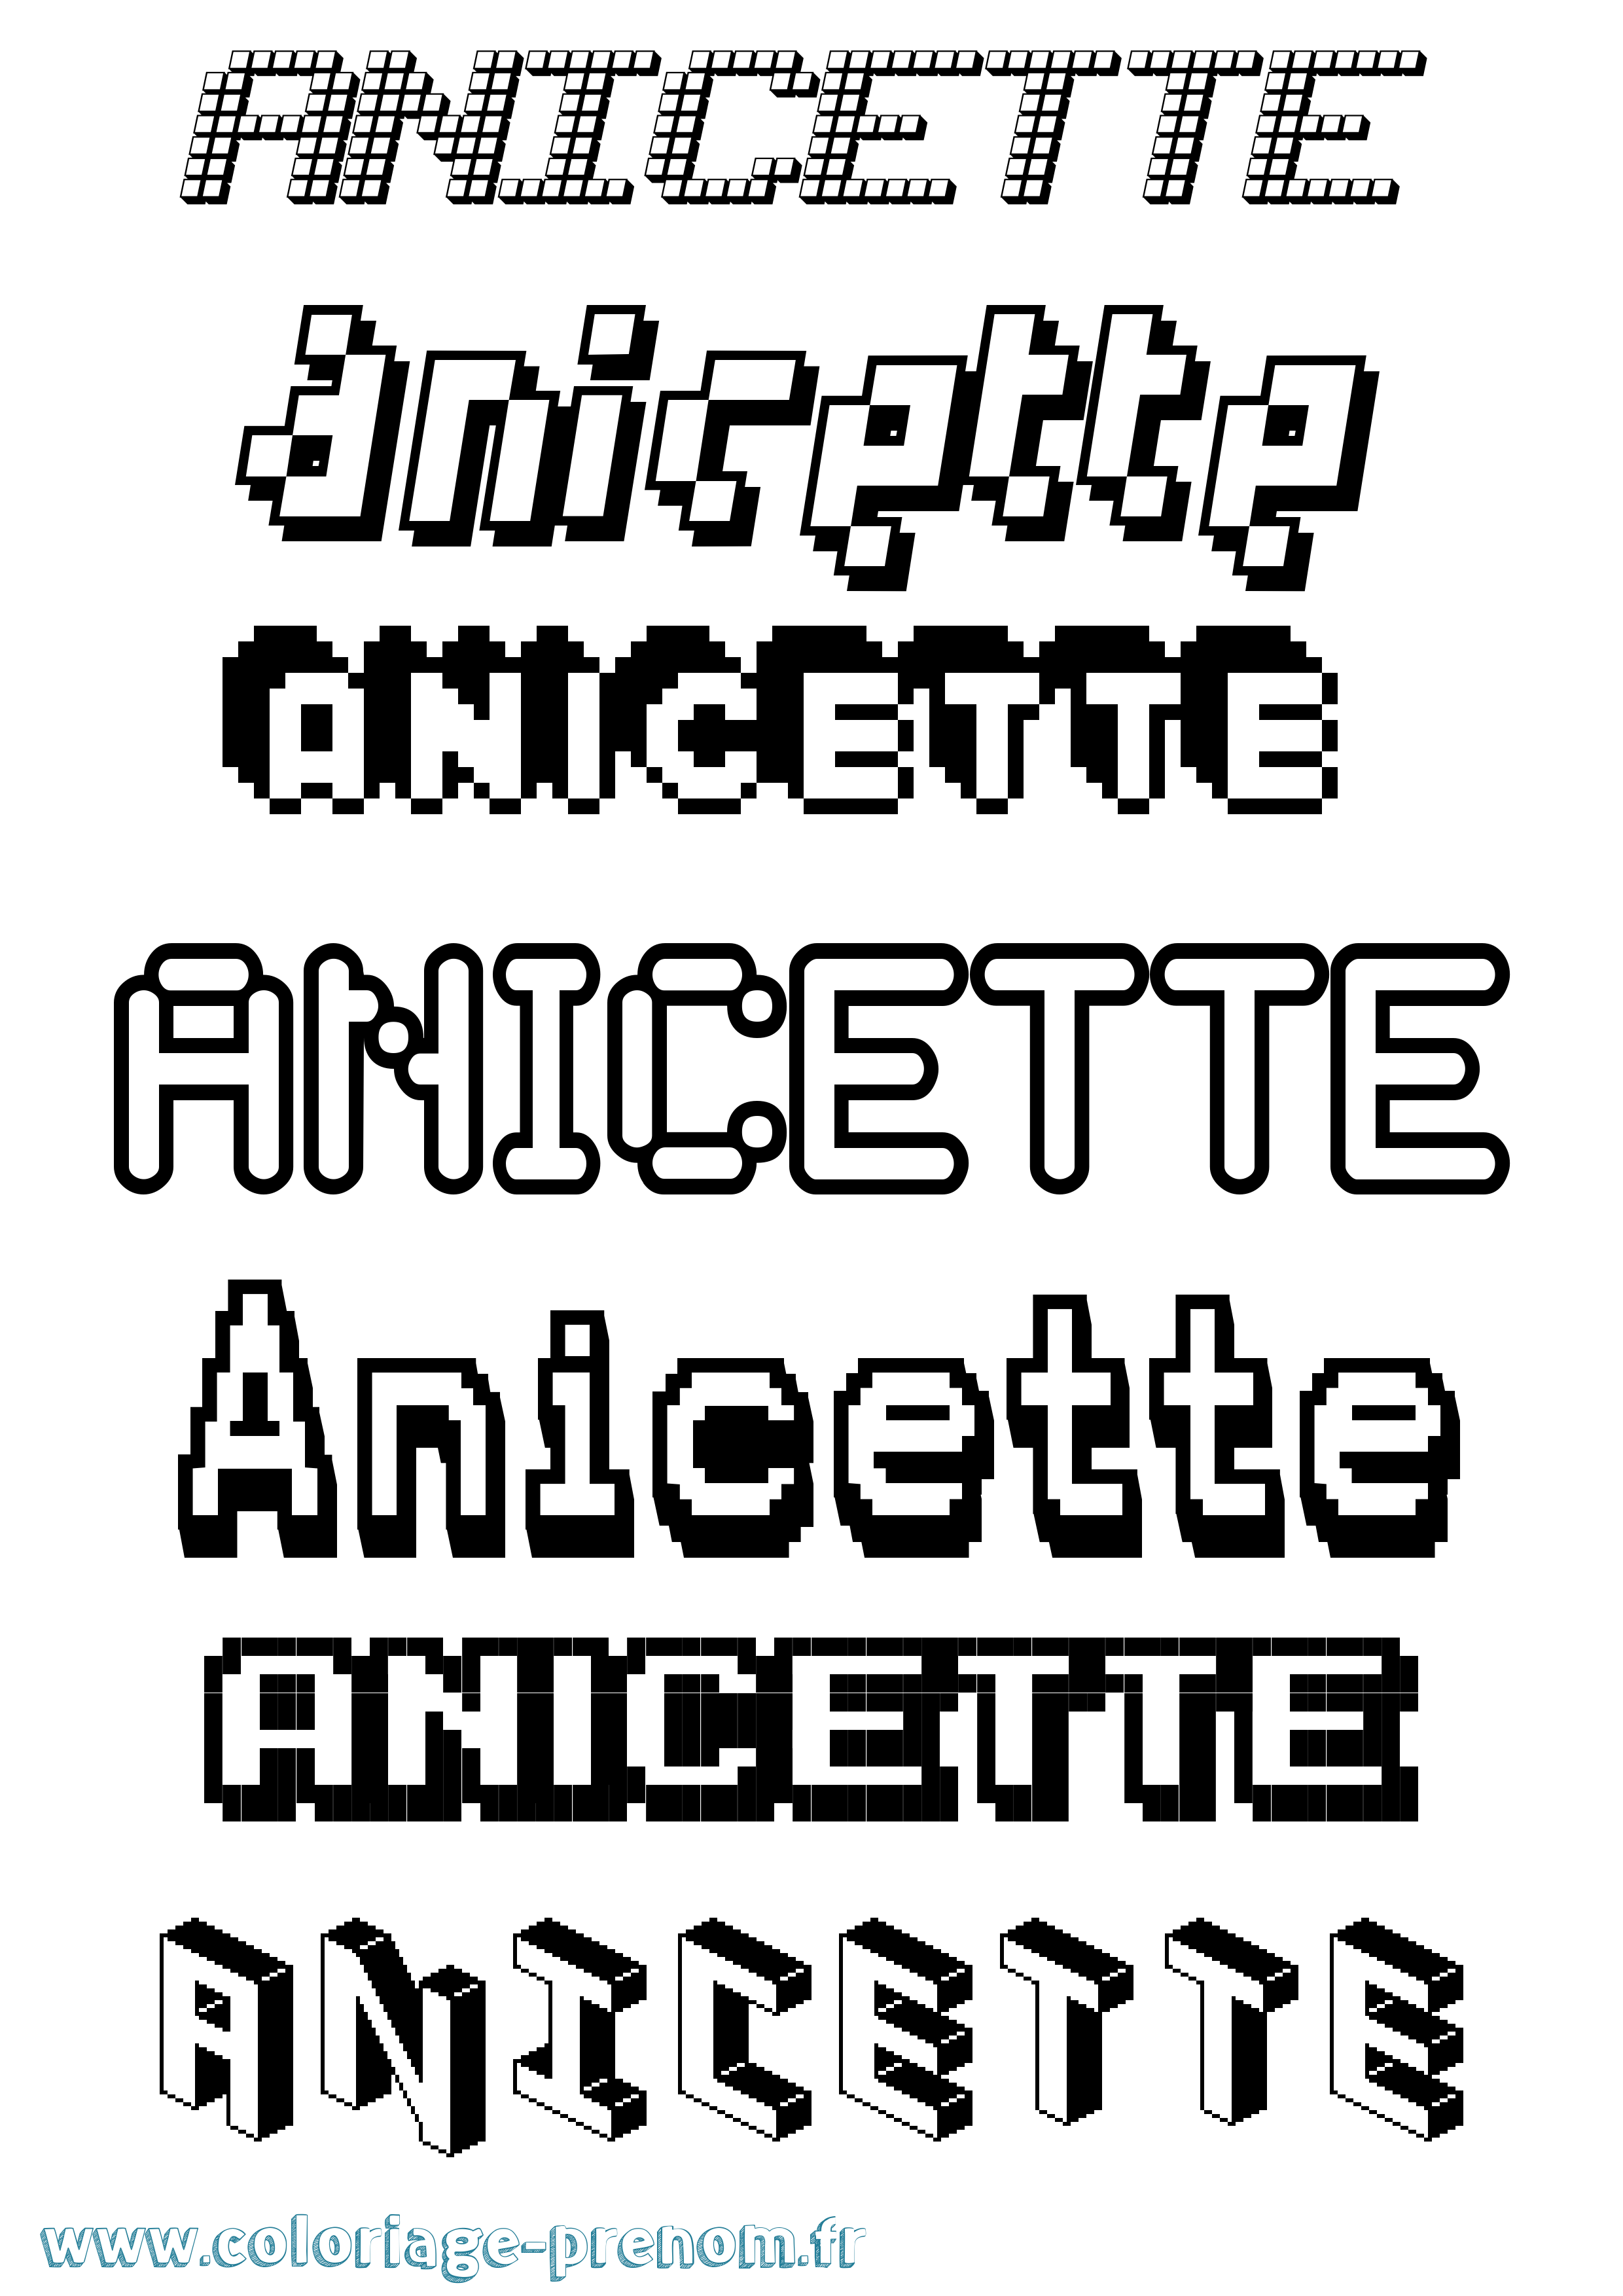 Coloriage prénom Anicette Pixel